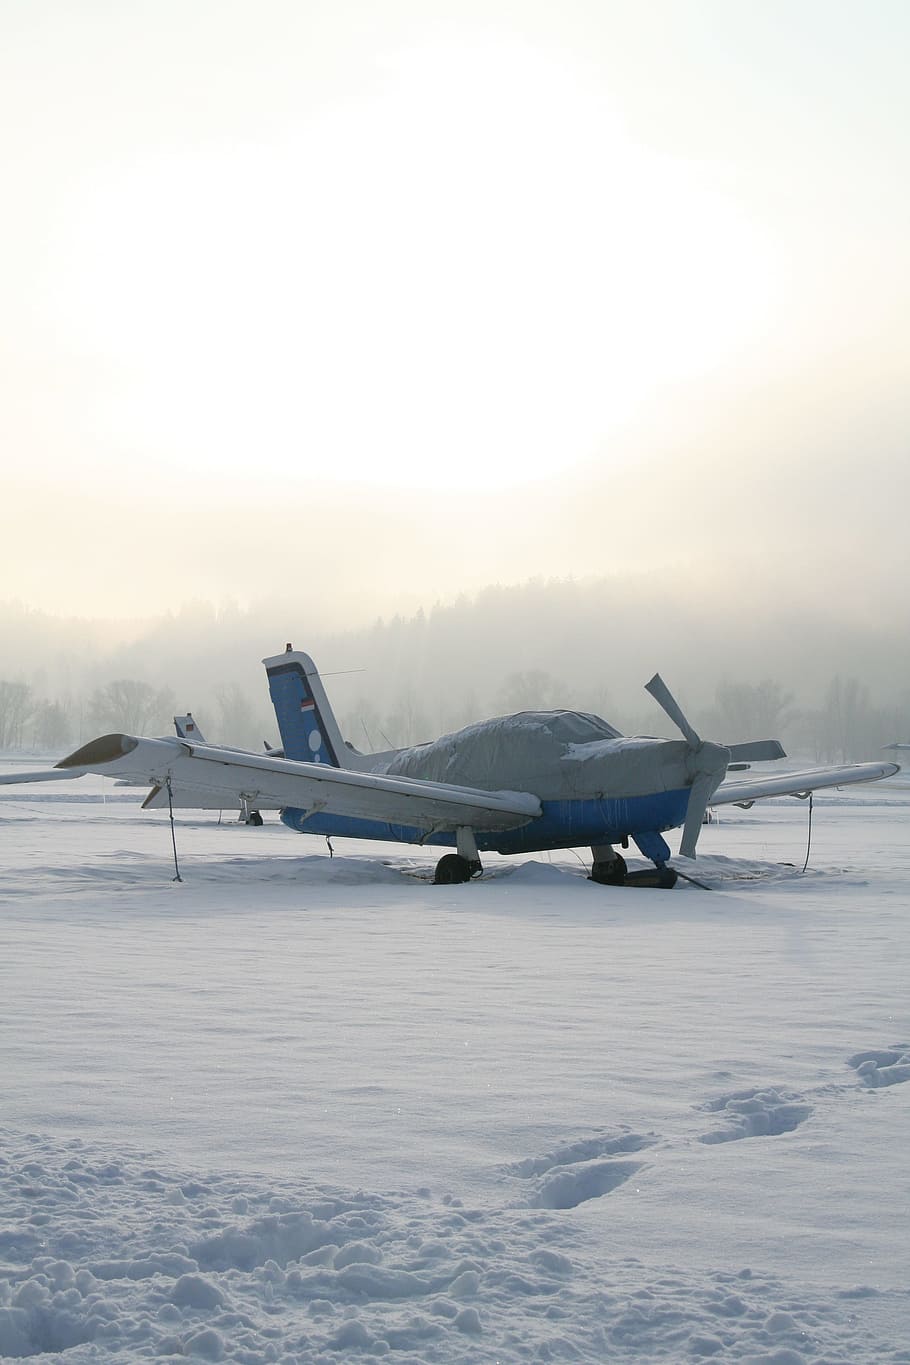 航空機, プロペラ, プロペラ飛行機, M17, スポーツ航空機, 冬, 軽飛行機, 飛行機, 低温, 屋外